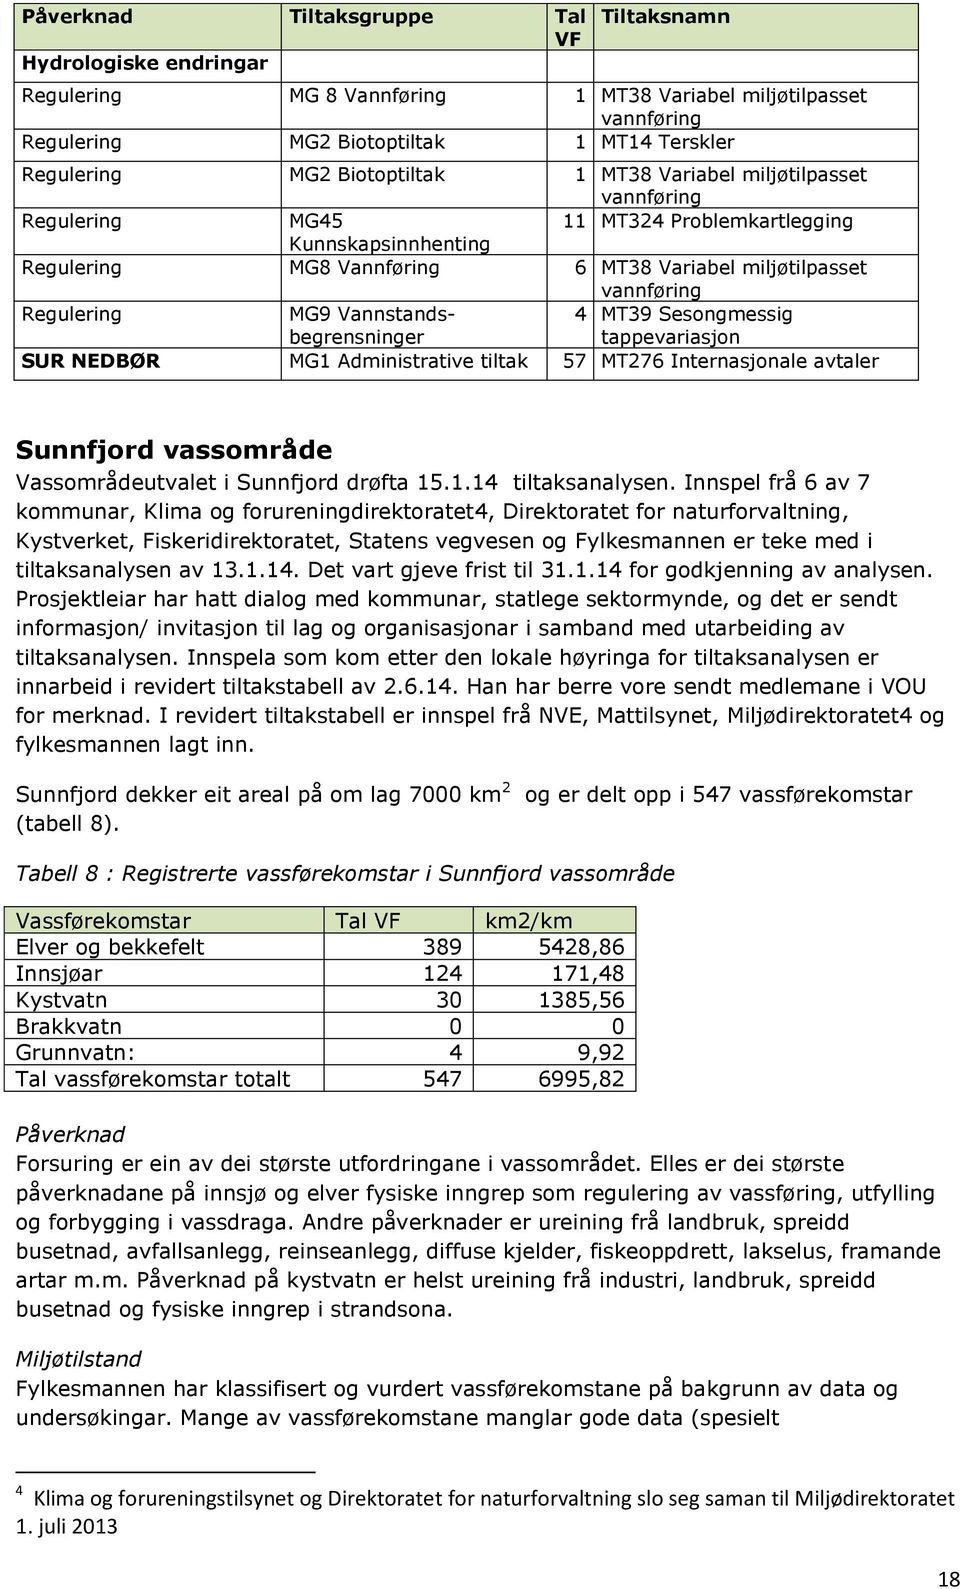 MG9 Vannstandsbegrensninger 4 MT39 Sesongmessig tappevariasjon SUR NEDBØR MG1 Administrative tiltak 57 MT276 Internasjonale avtaler Sunnfjord vassområde Vassområdeutvalet i Sunnfjord drøfta 15.1.14 tiltaksanalysen.